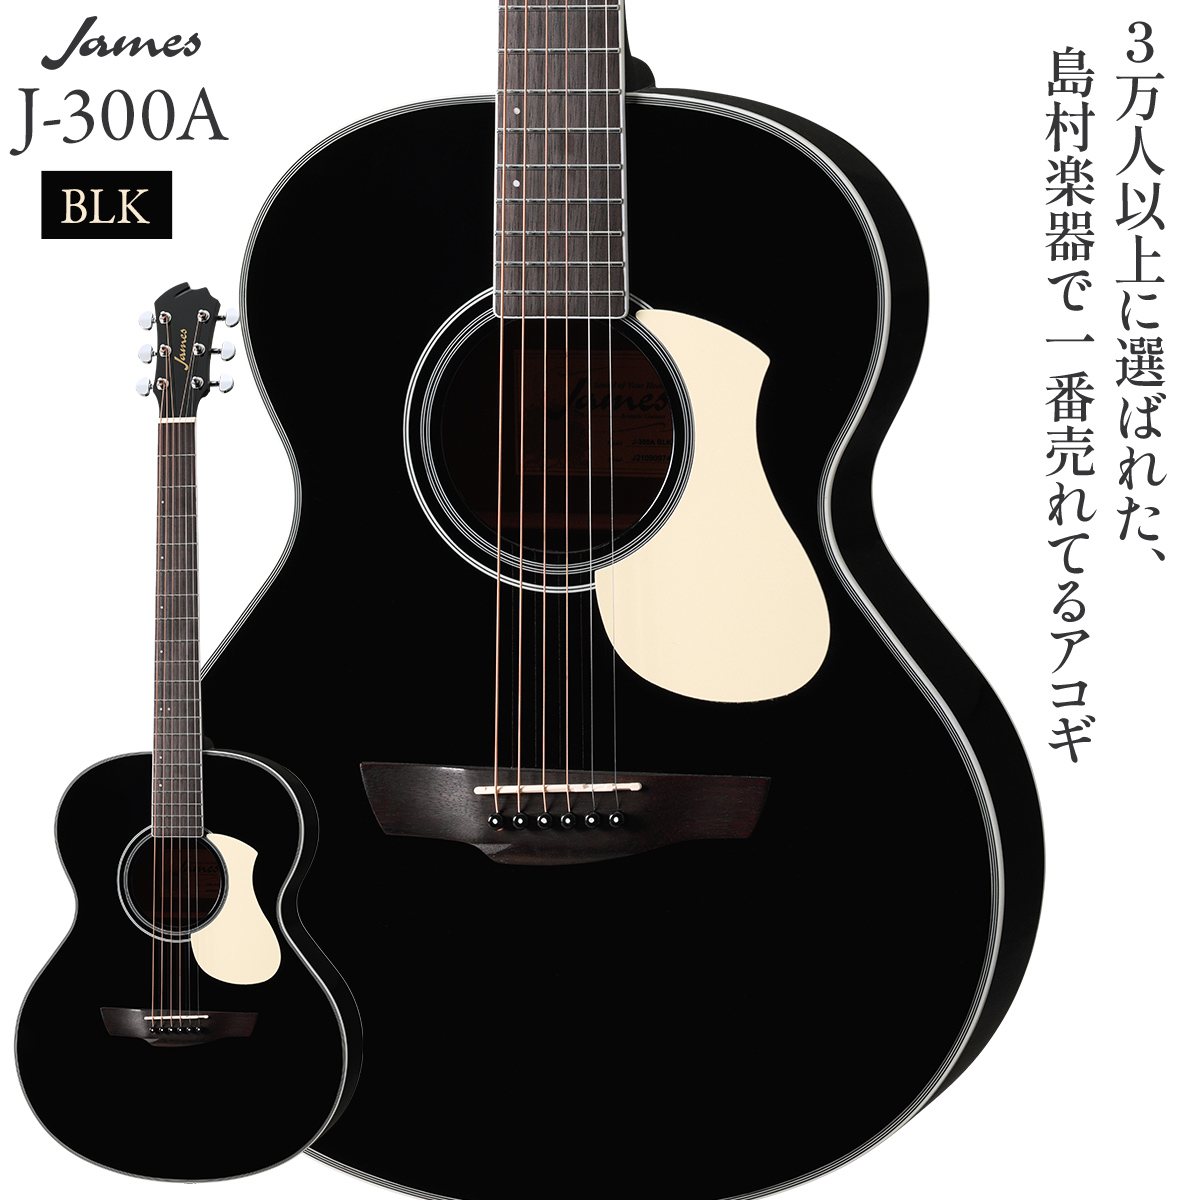 アコースティックギター J-300A CAO ソフトケースカポピックチューナー 